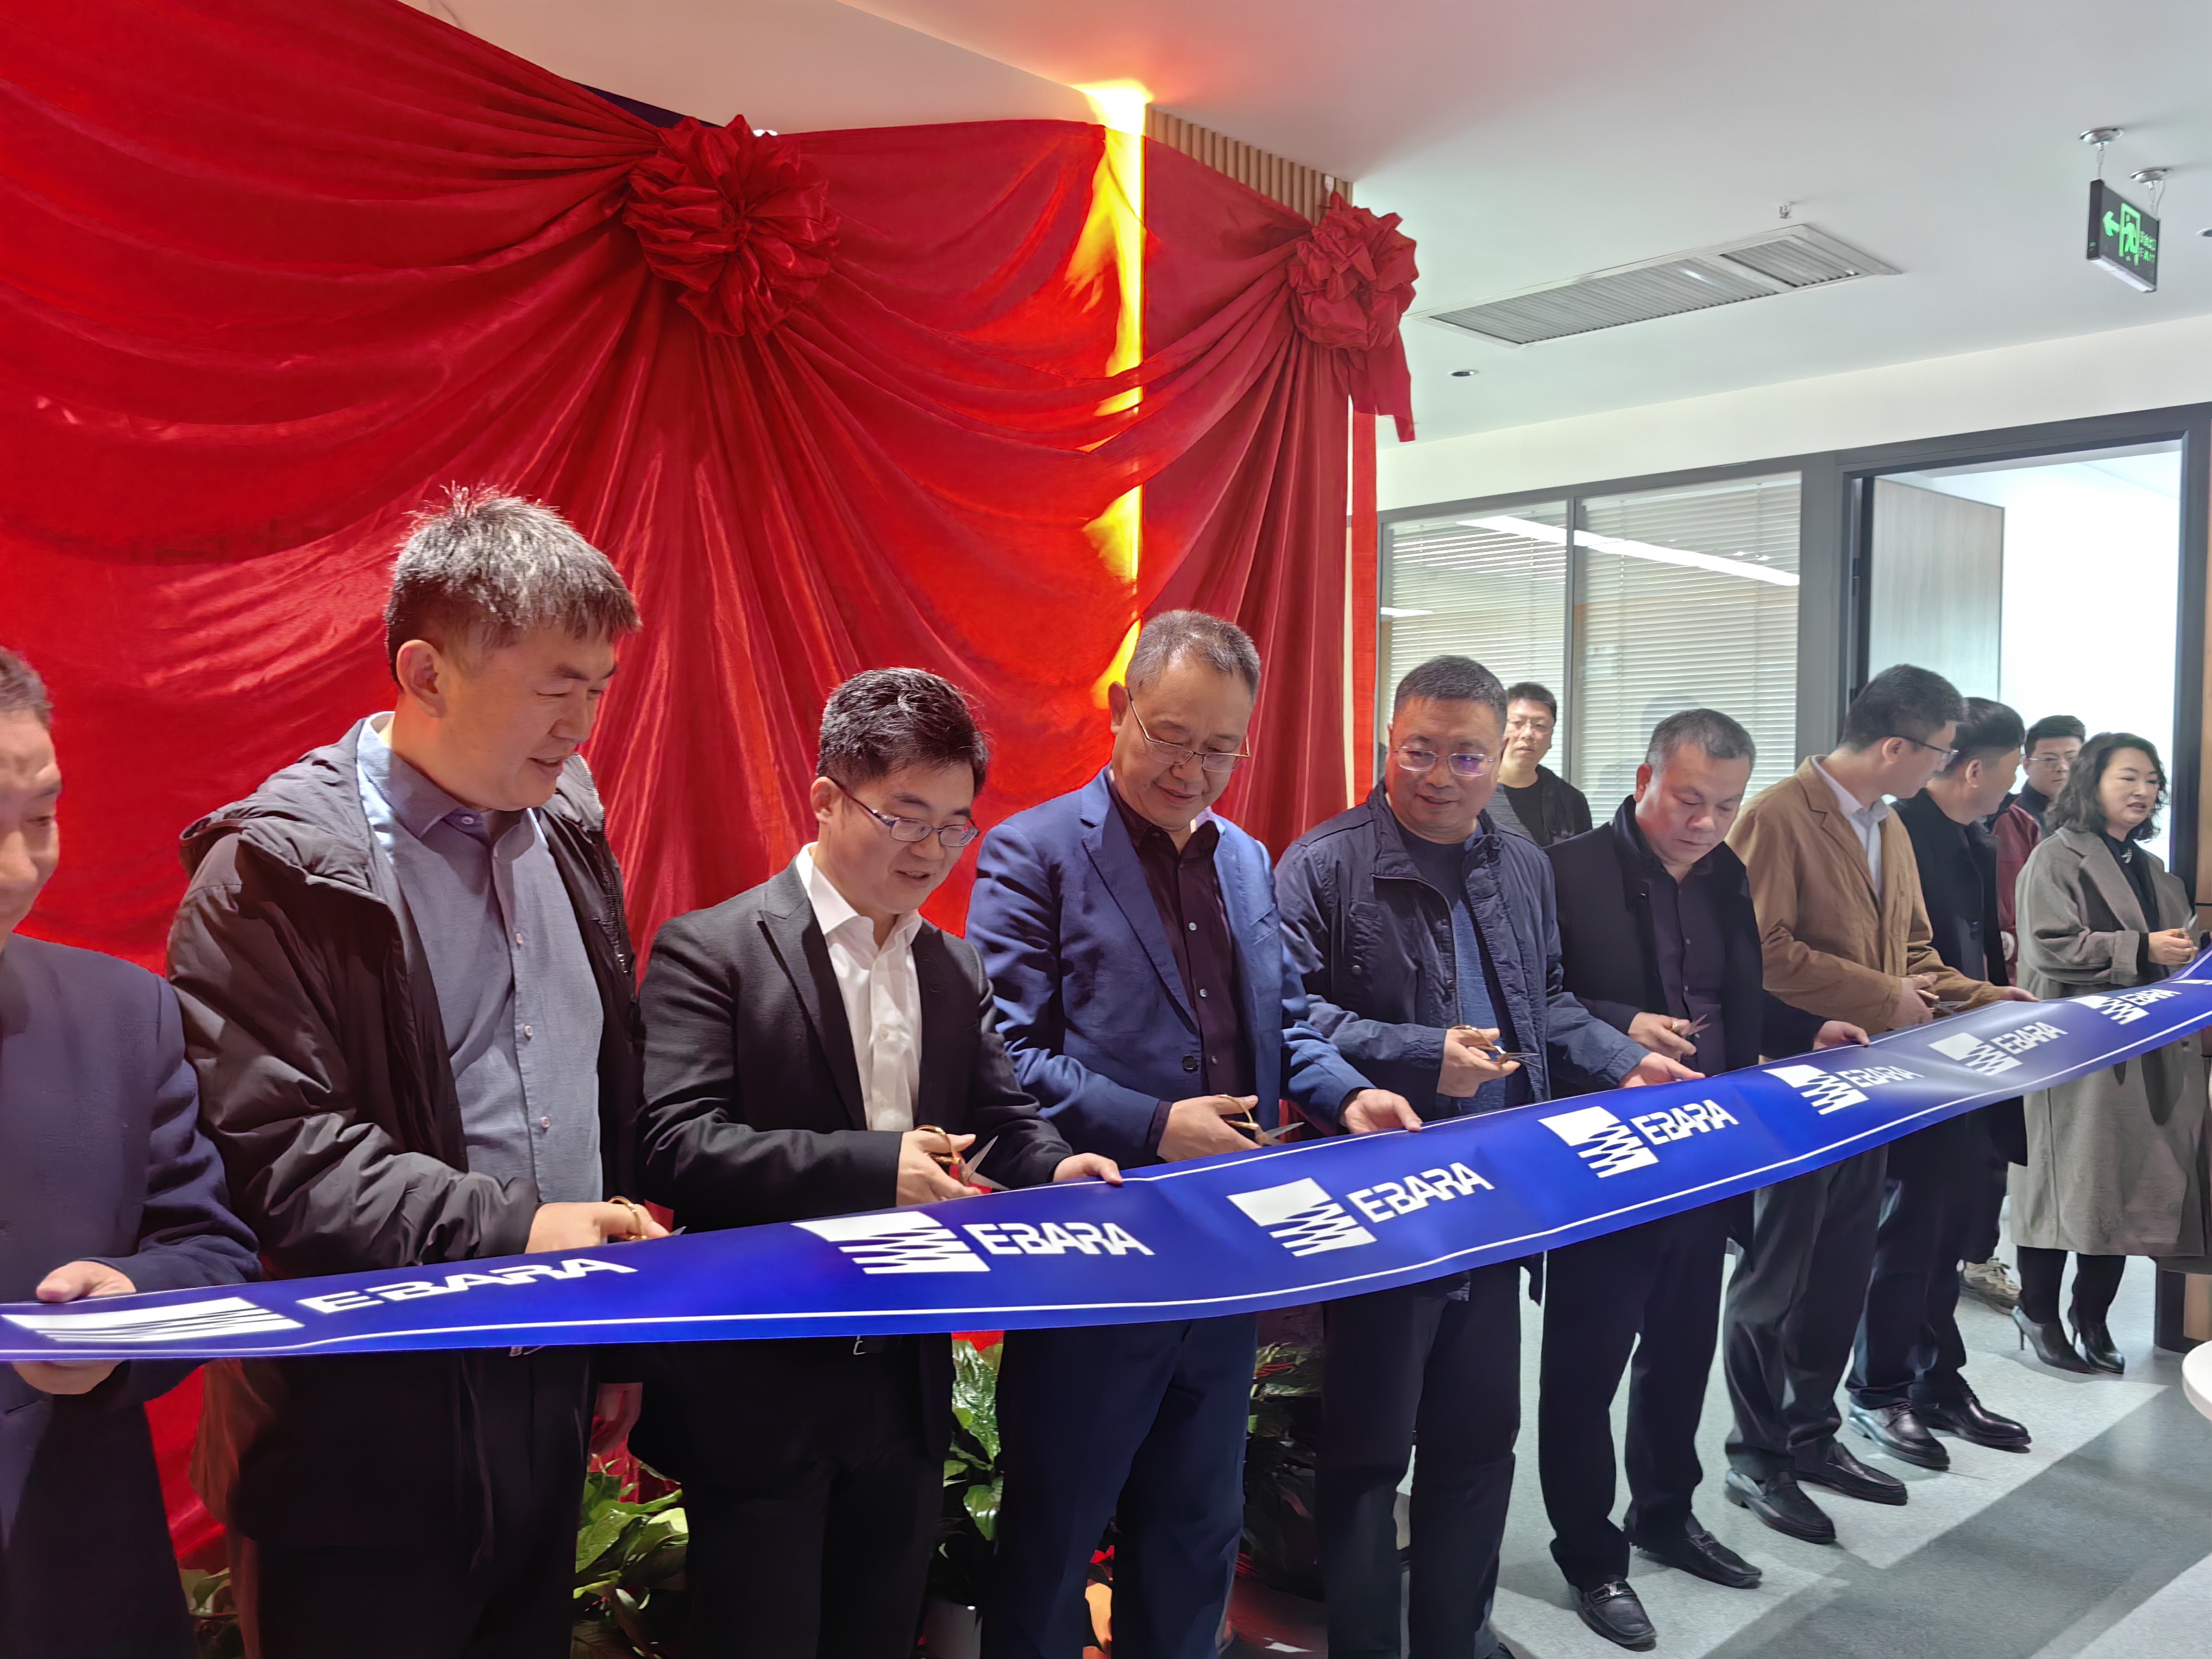 博乐体育中心(中国)有限公司 武汉营业部正式成立